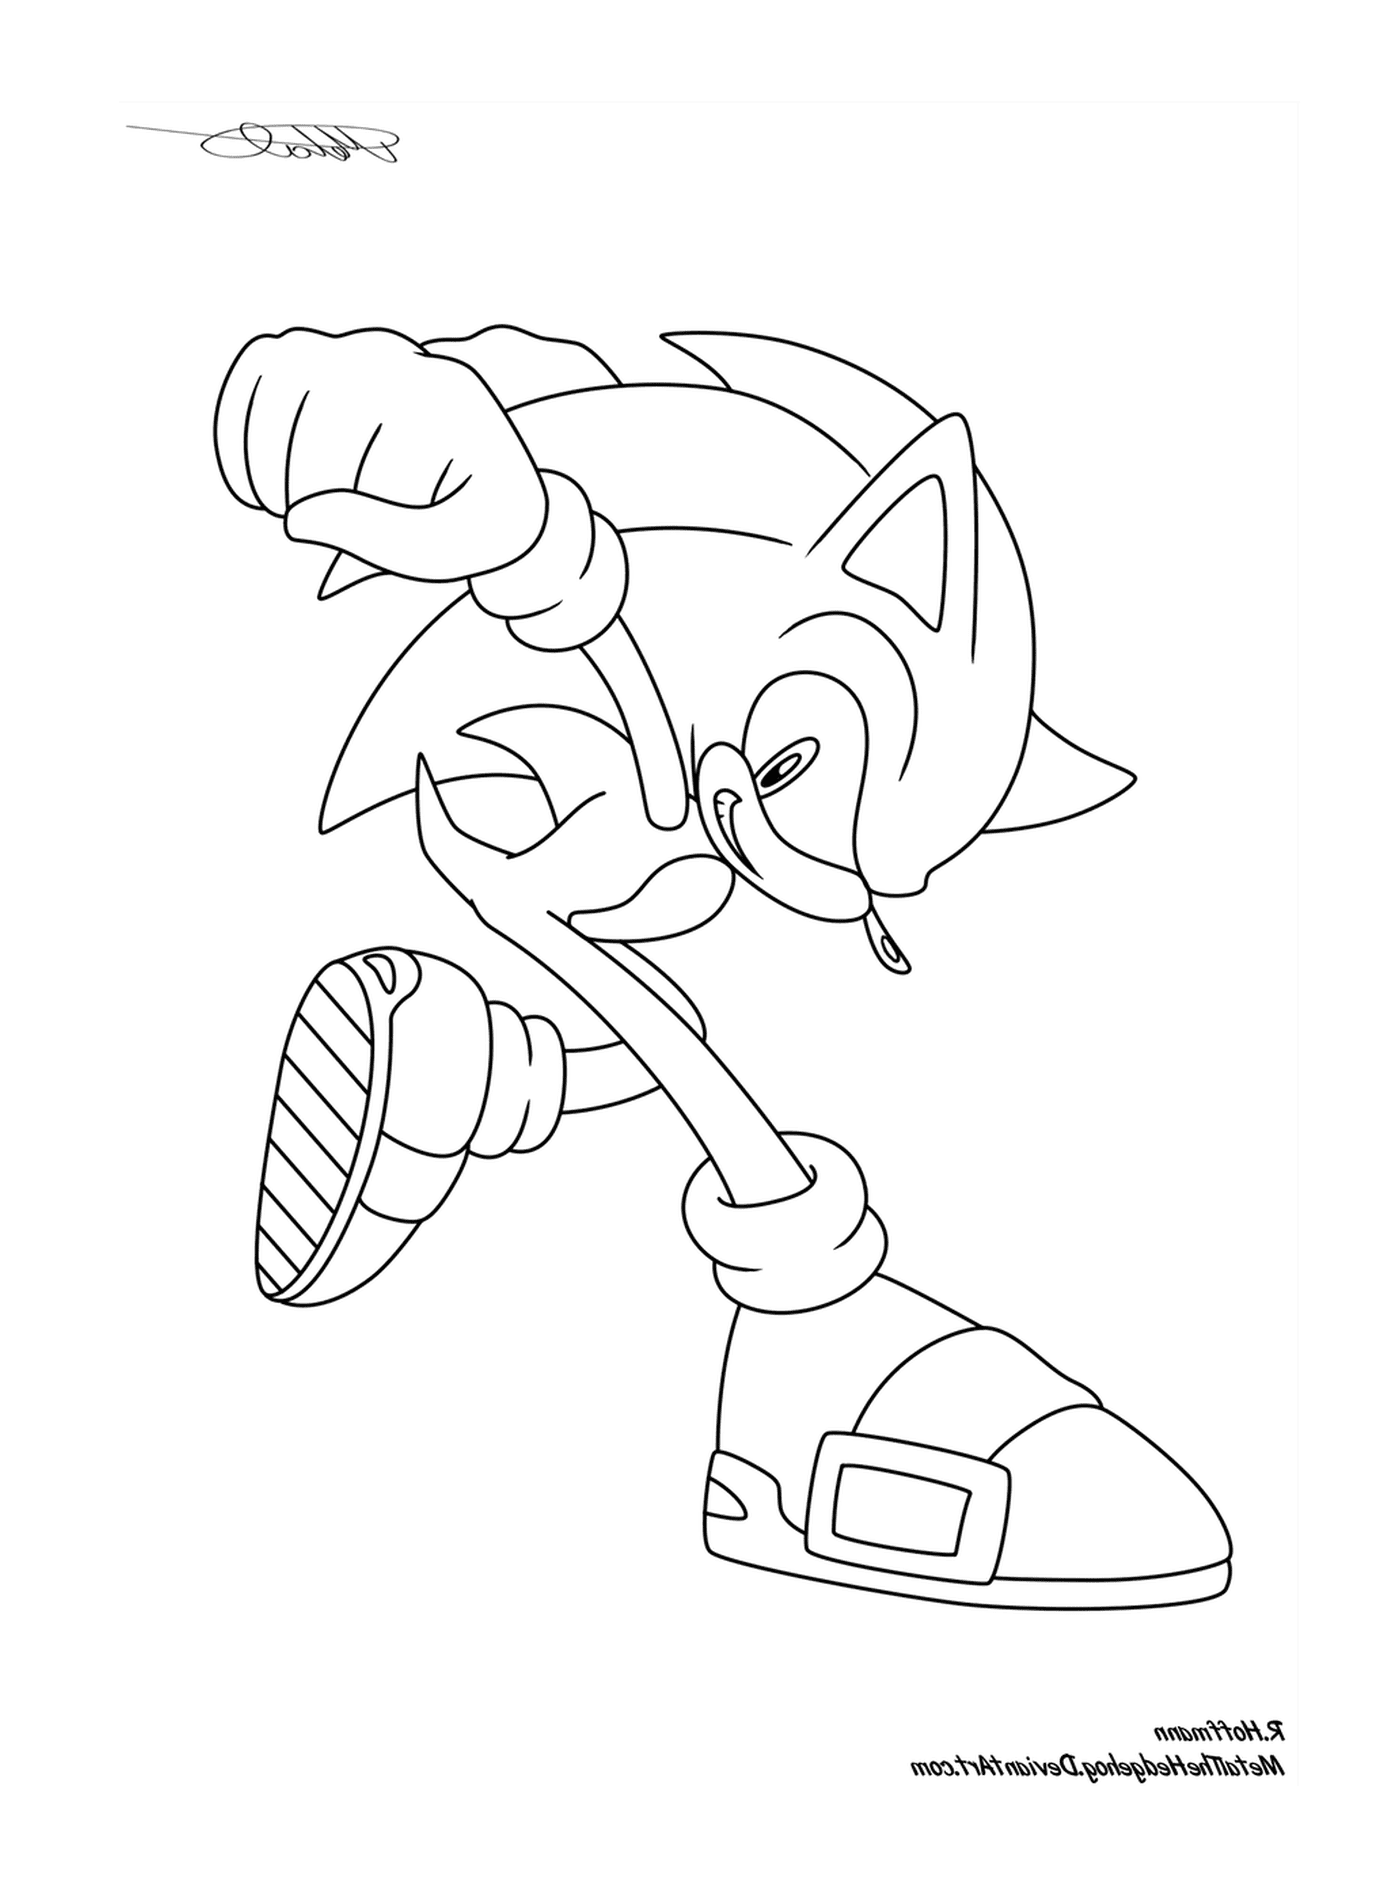   Sonic en mouvement 